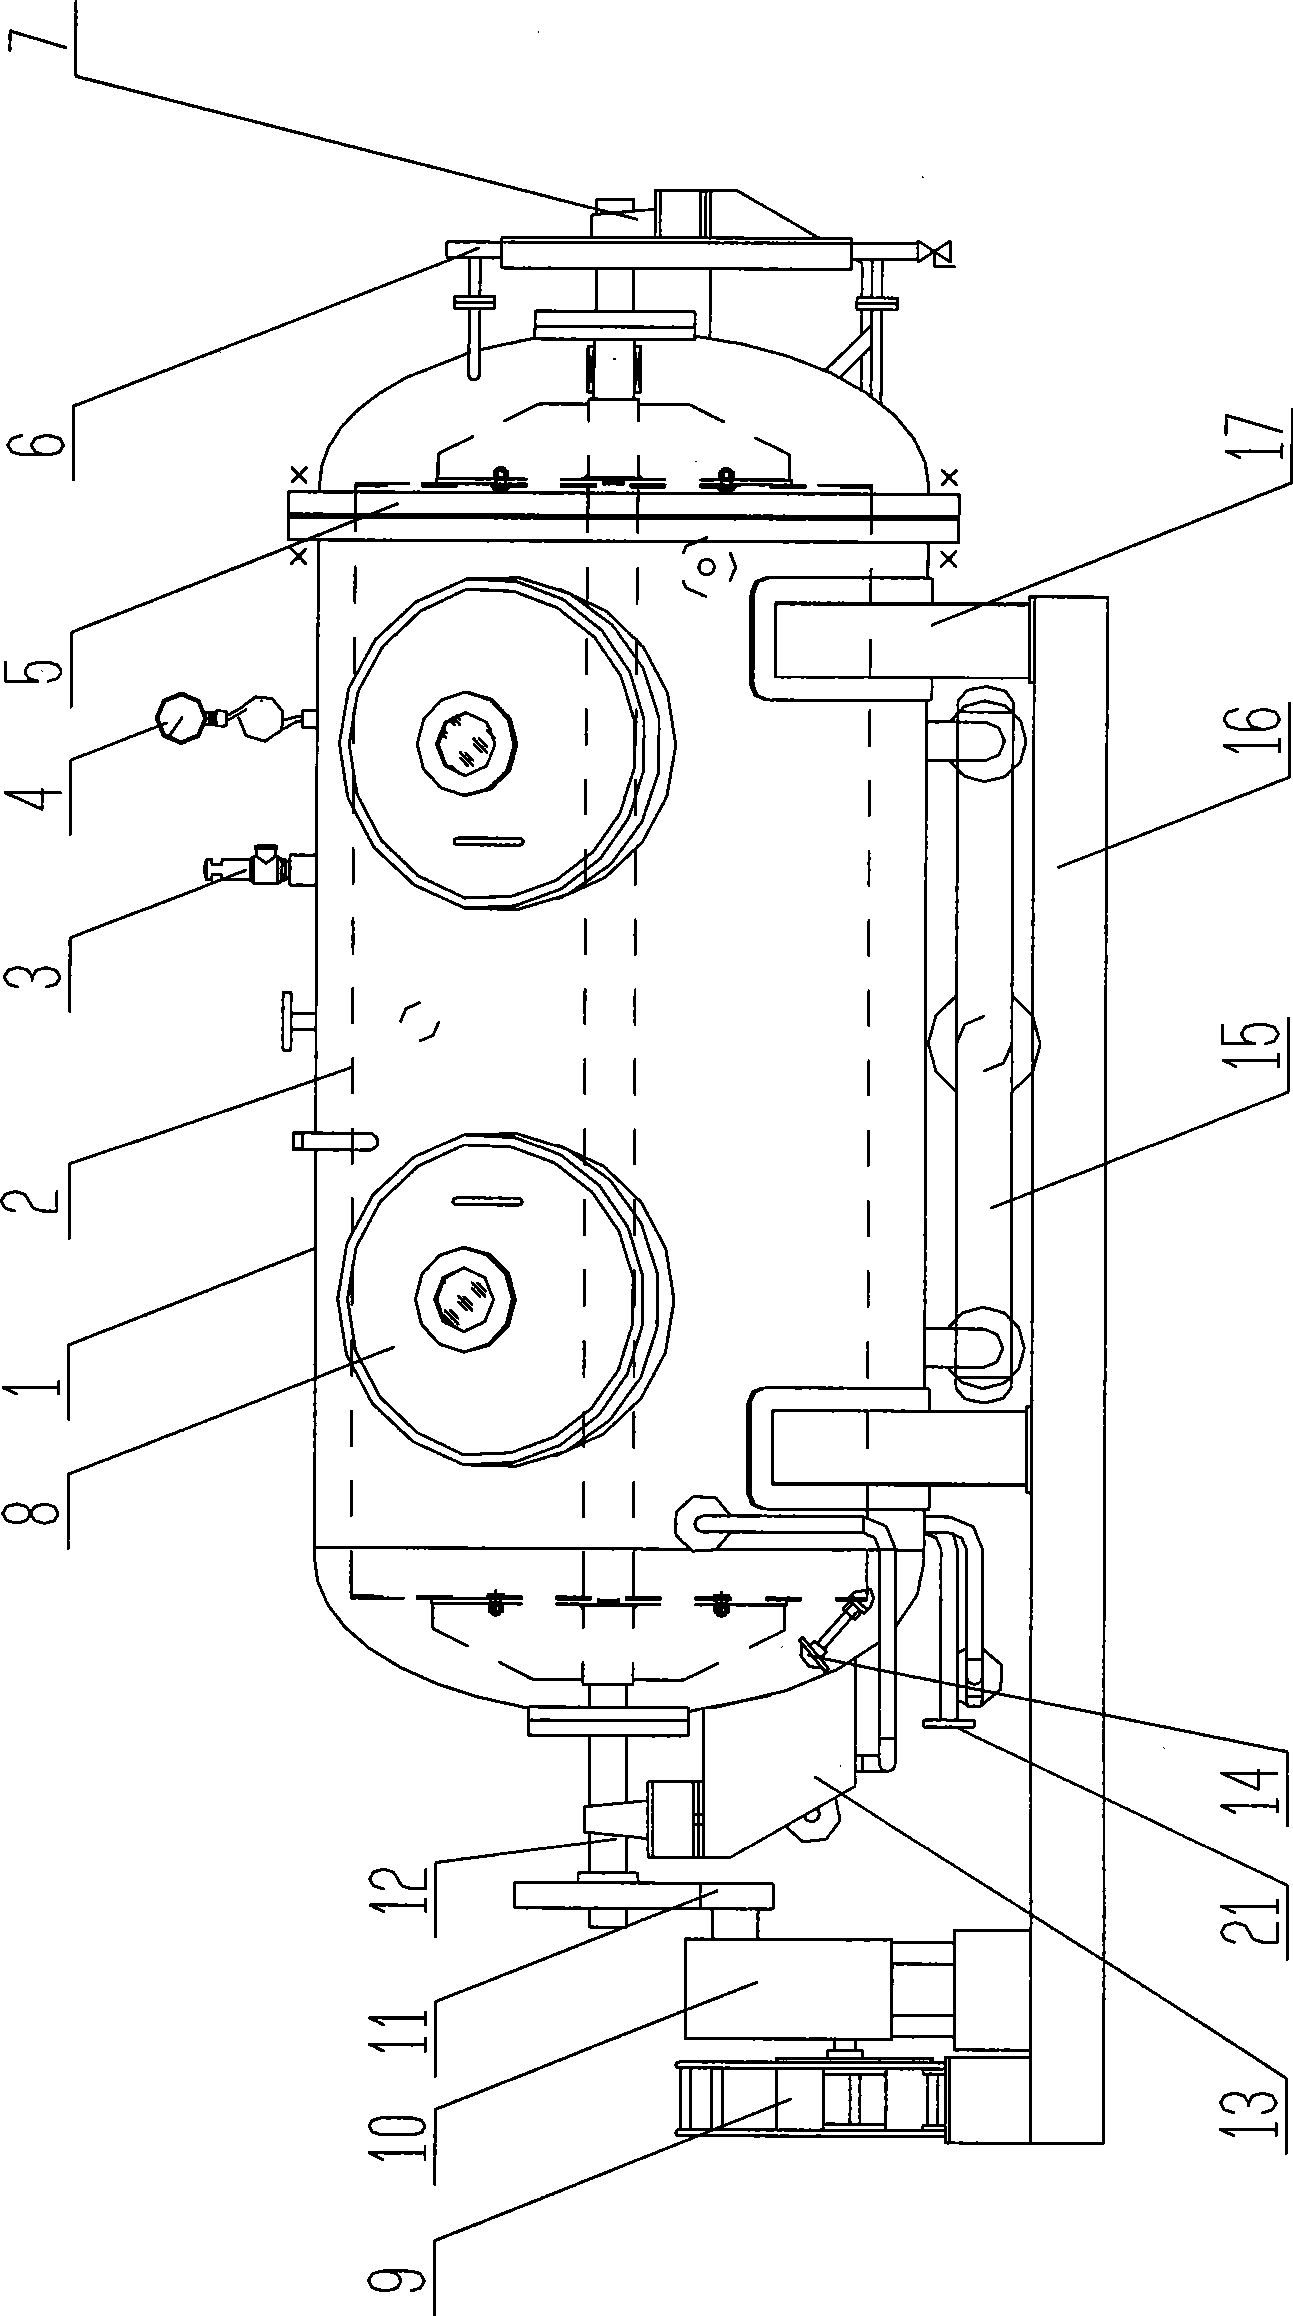 Rotary drum type dyeing machine